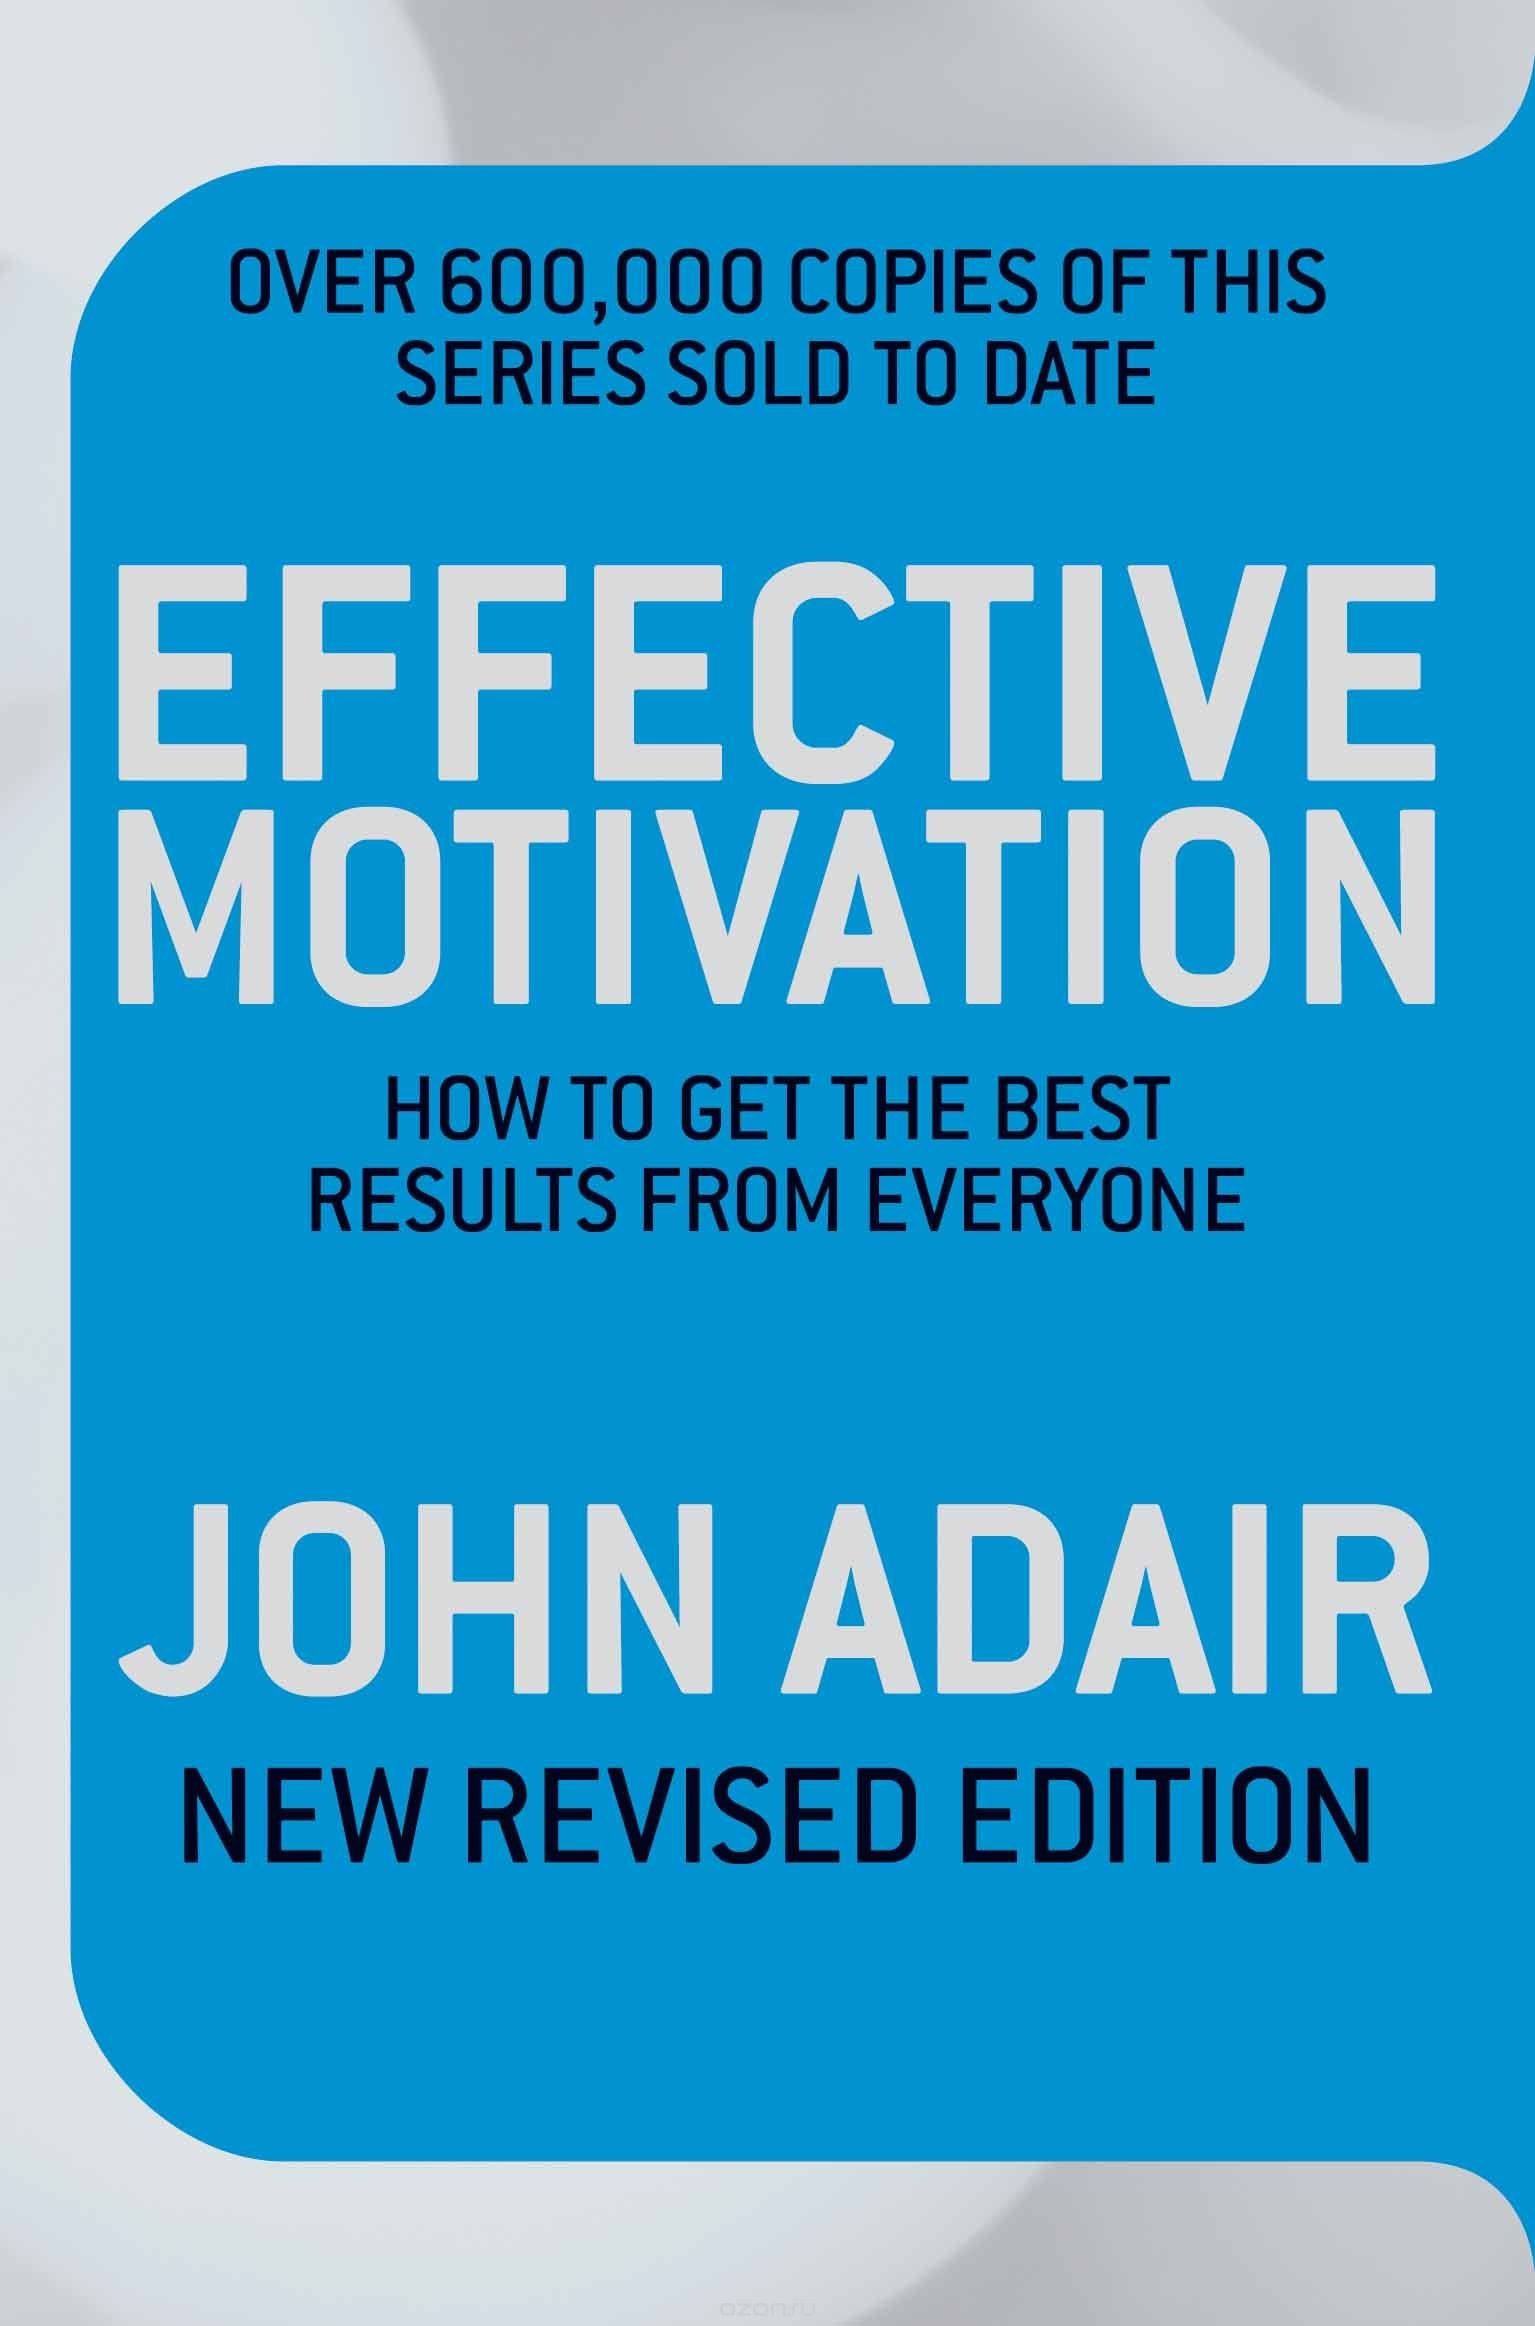 Скачать книгу "Effective Motivation REVISED EDITION"